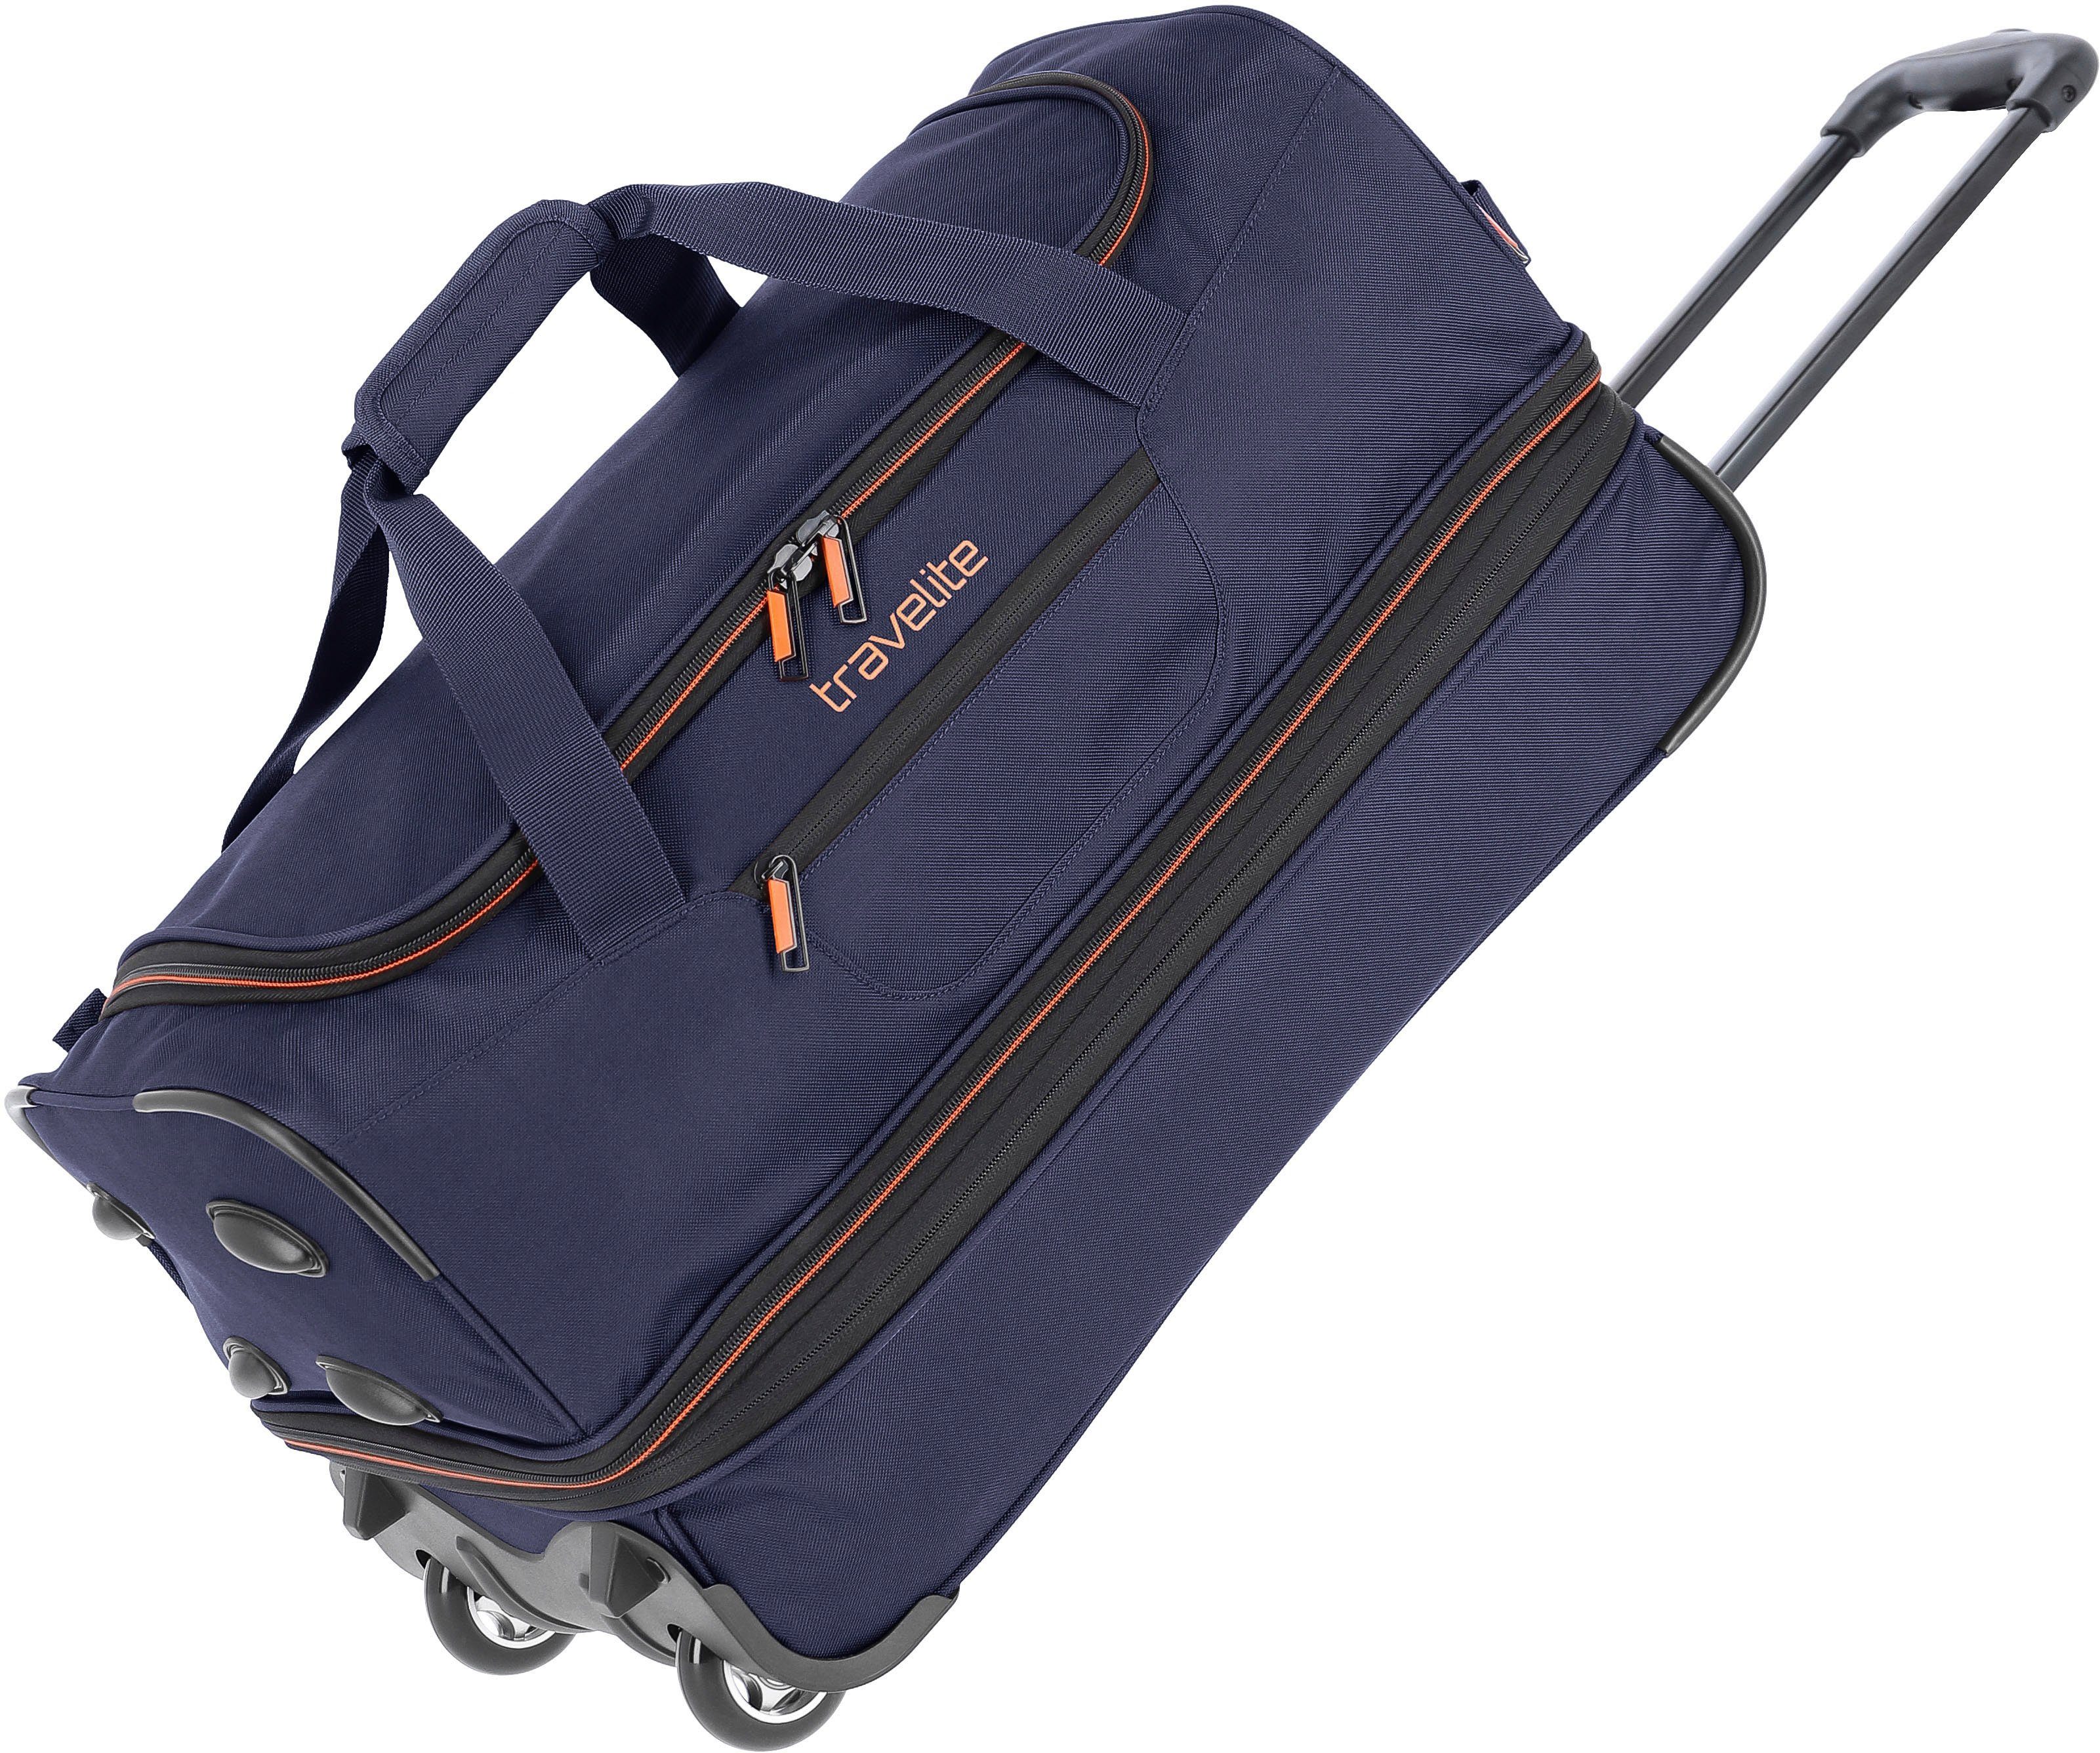 travelite Reisetasche Basics, 55 cm, marine/orange, mit Rollen, Große  Öffnung am Hauptfach für leichtes Bepacken